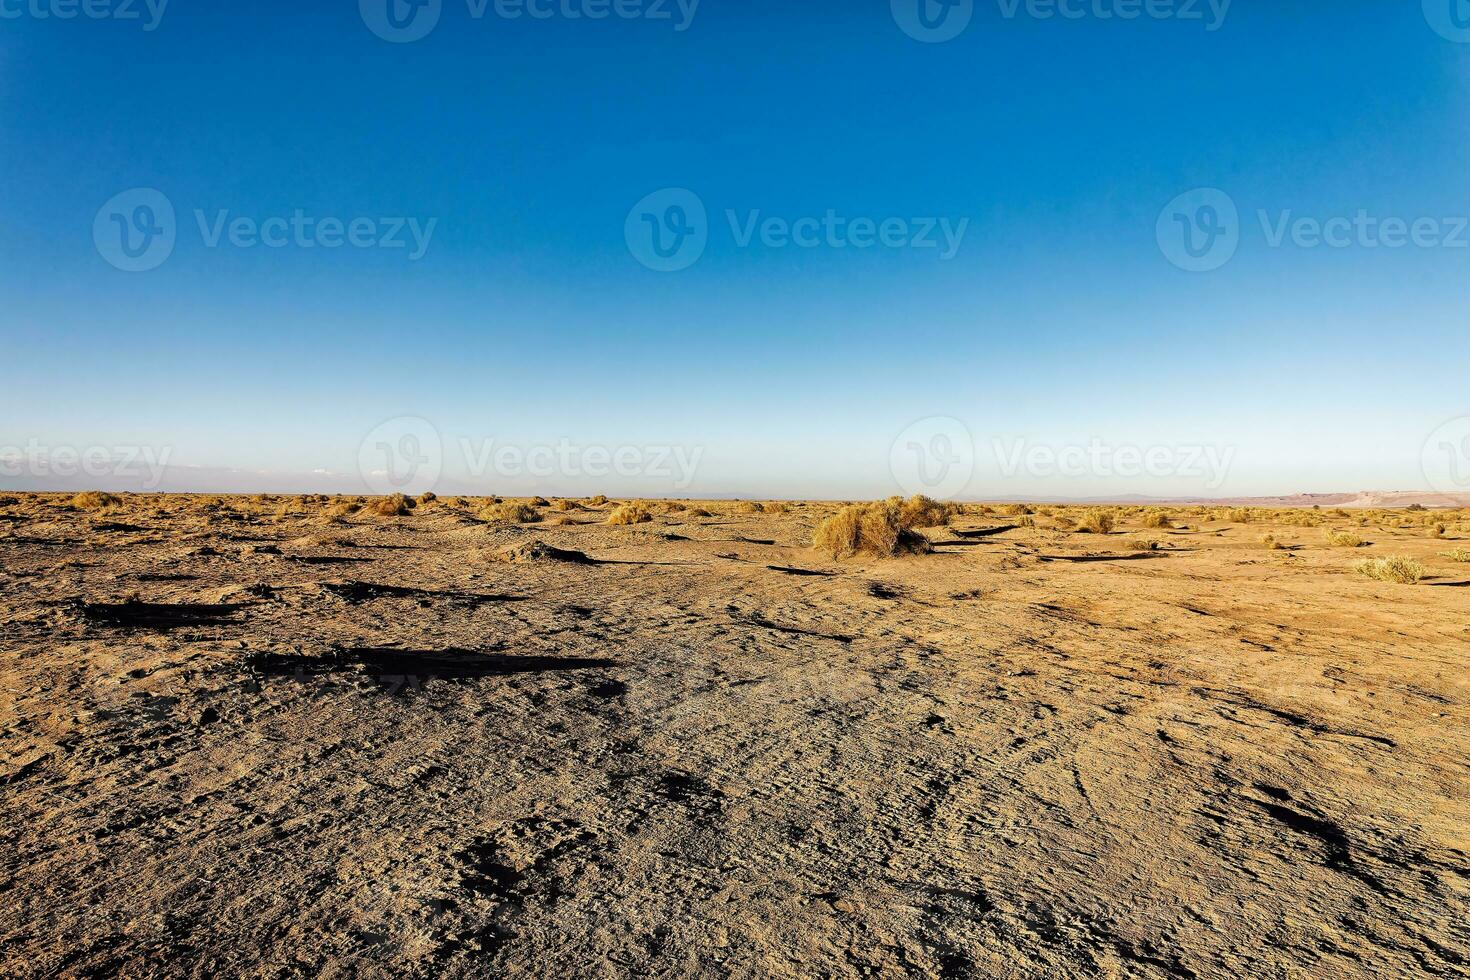 Landscapes of the Atacama Desert - San Pedro de Atacama - El Loa - Antofagasta Region - Chile. photo